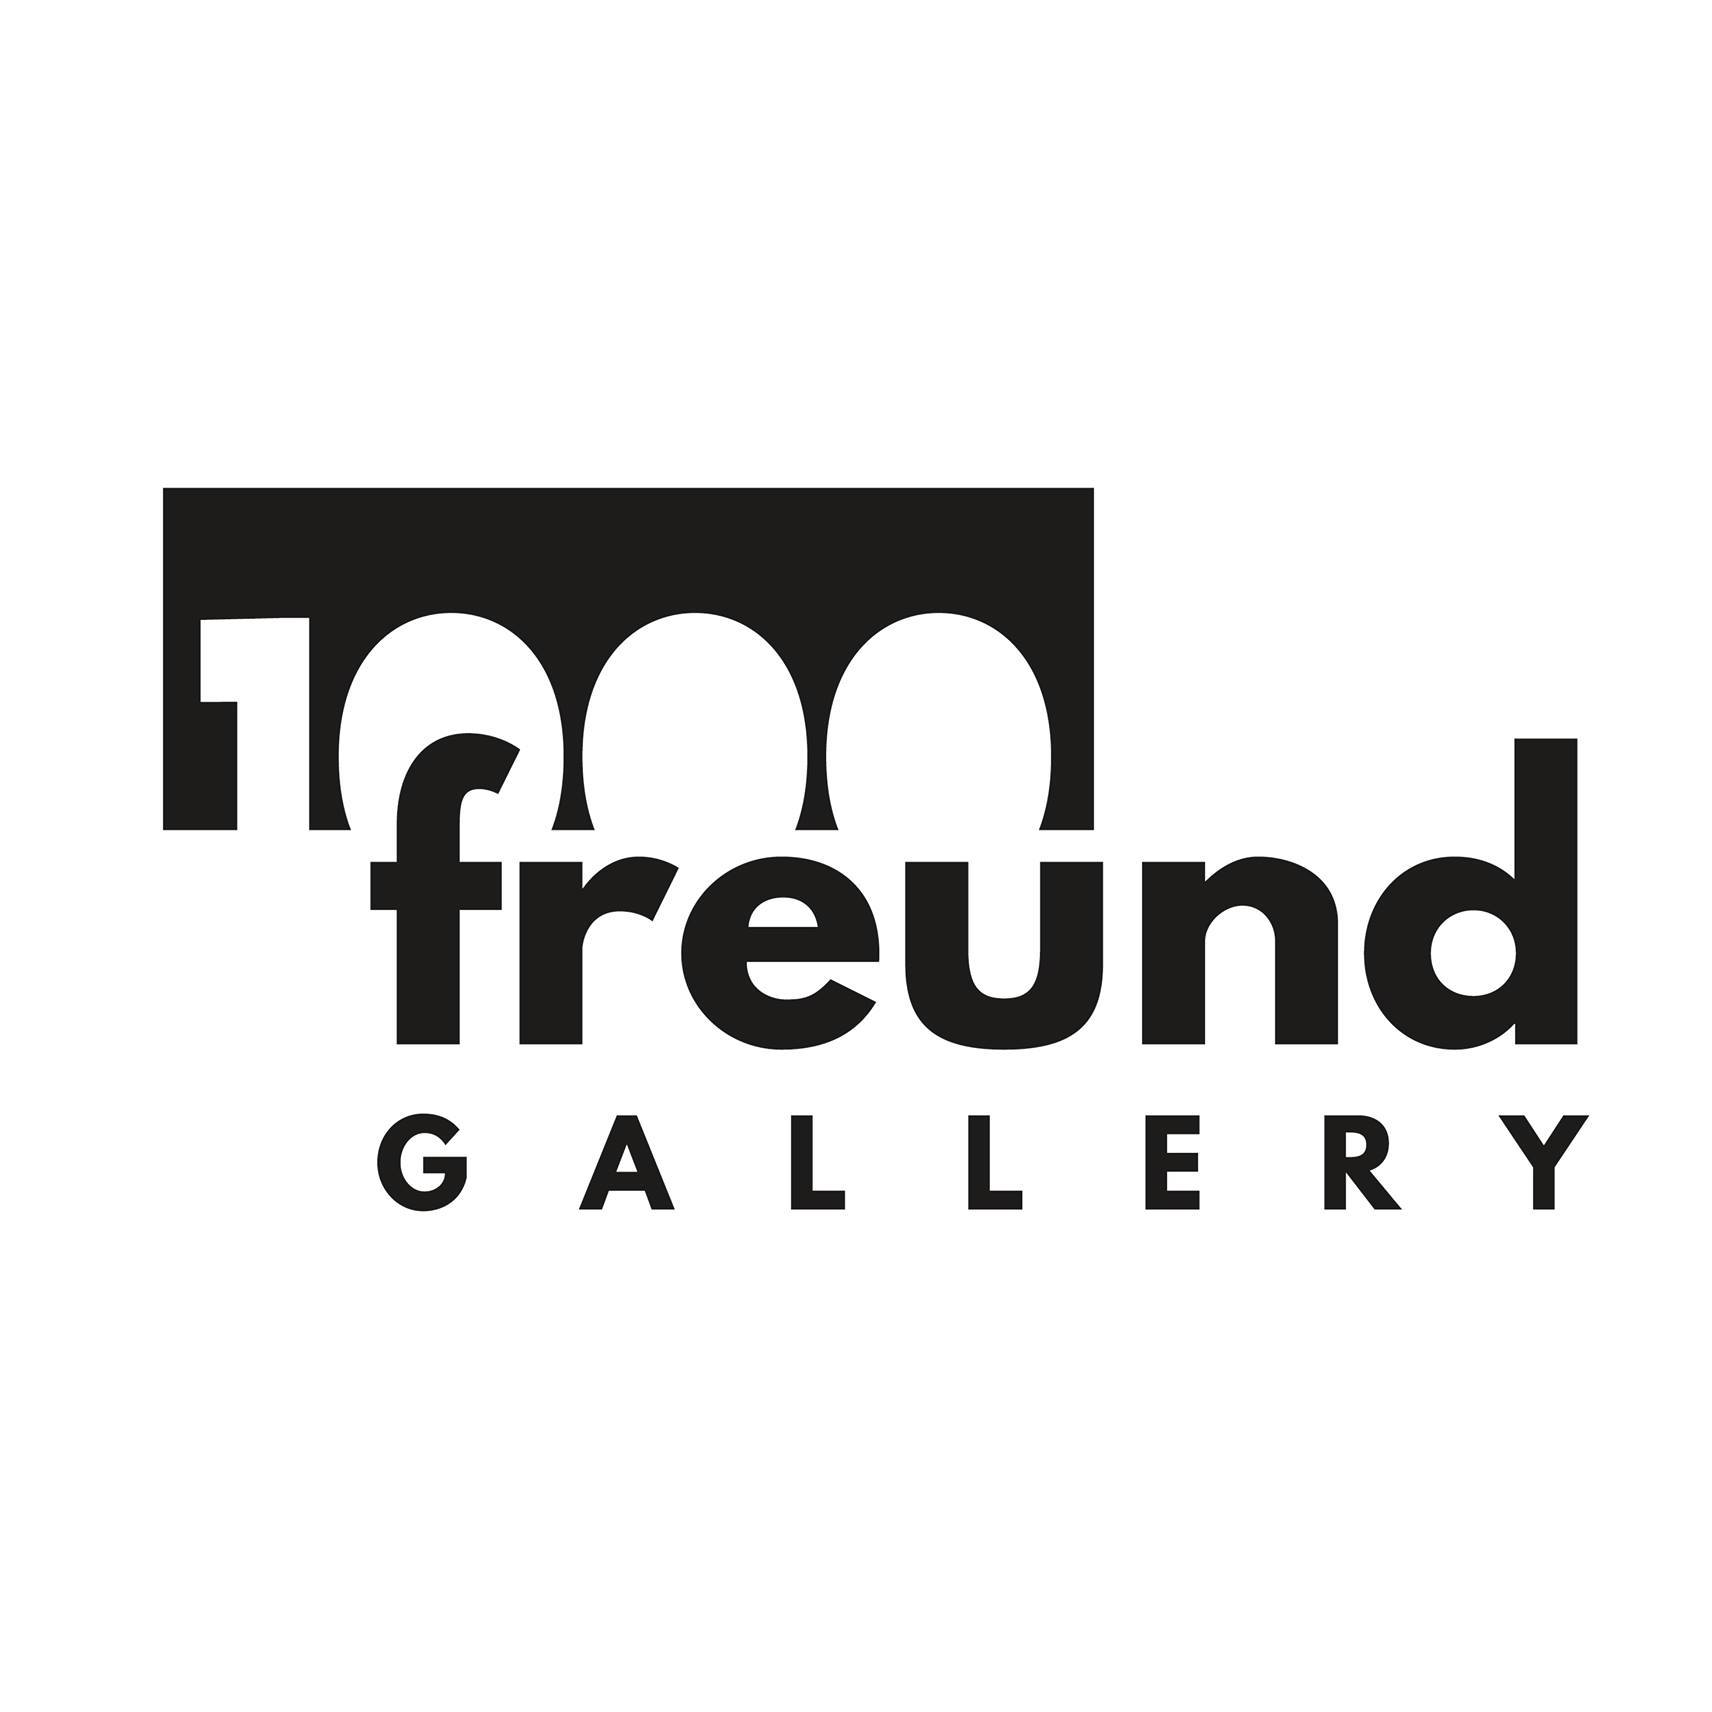 1000freund Gallery GbR in Köln